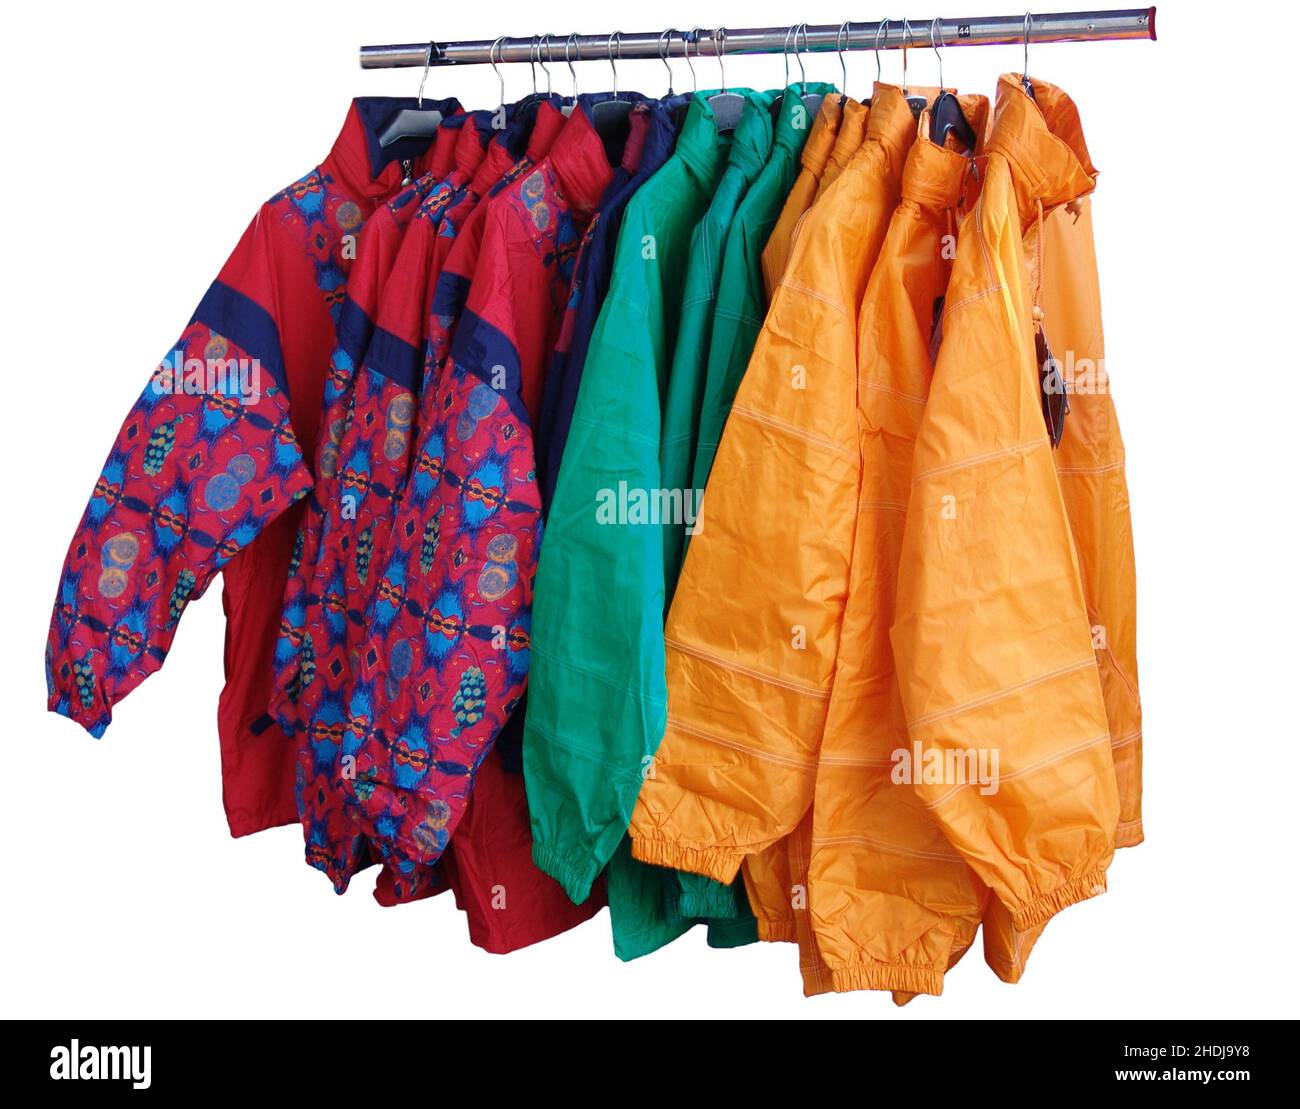 rain jacket, rain jackets Stock Photo